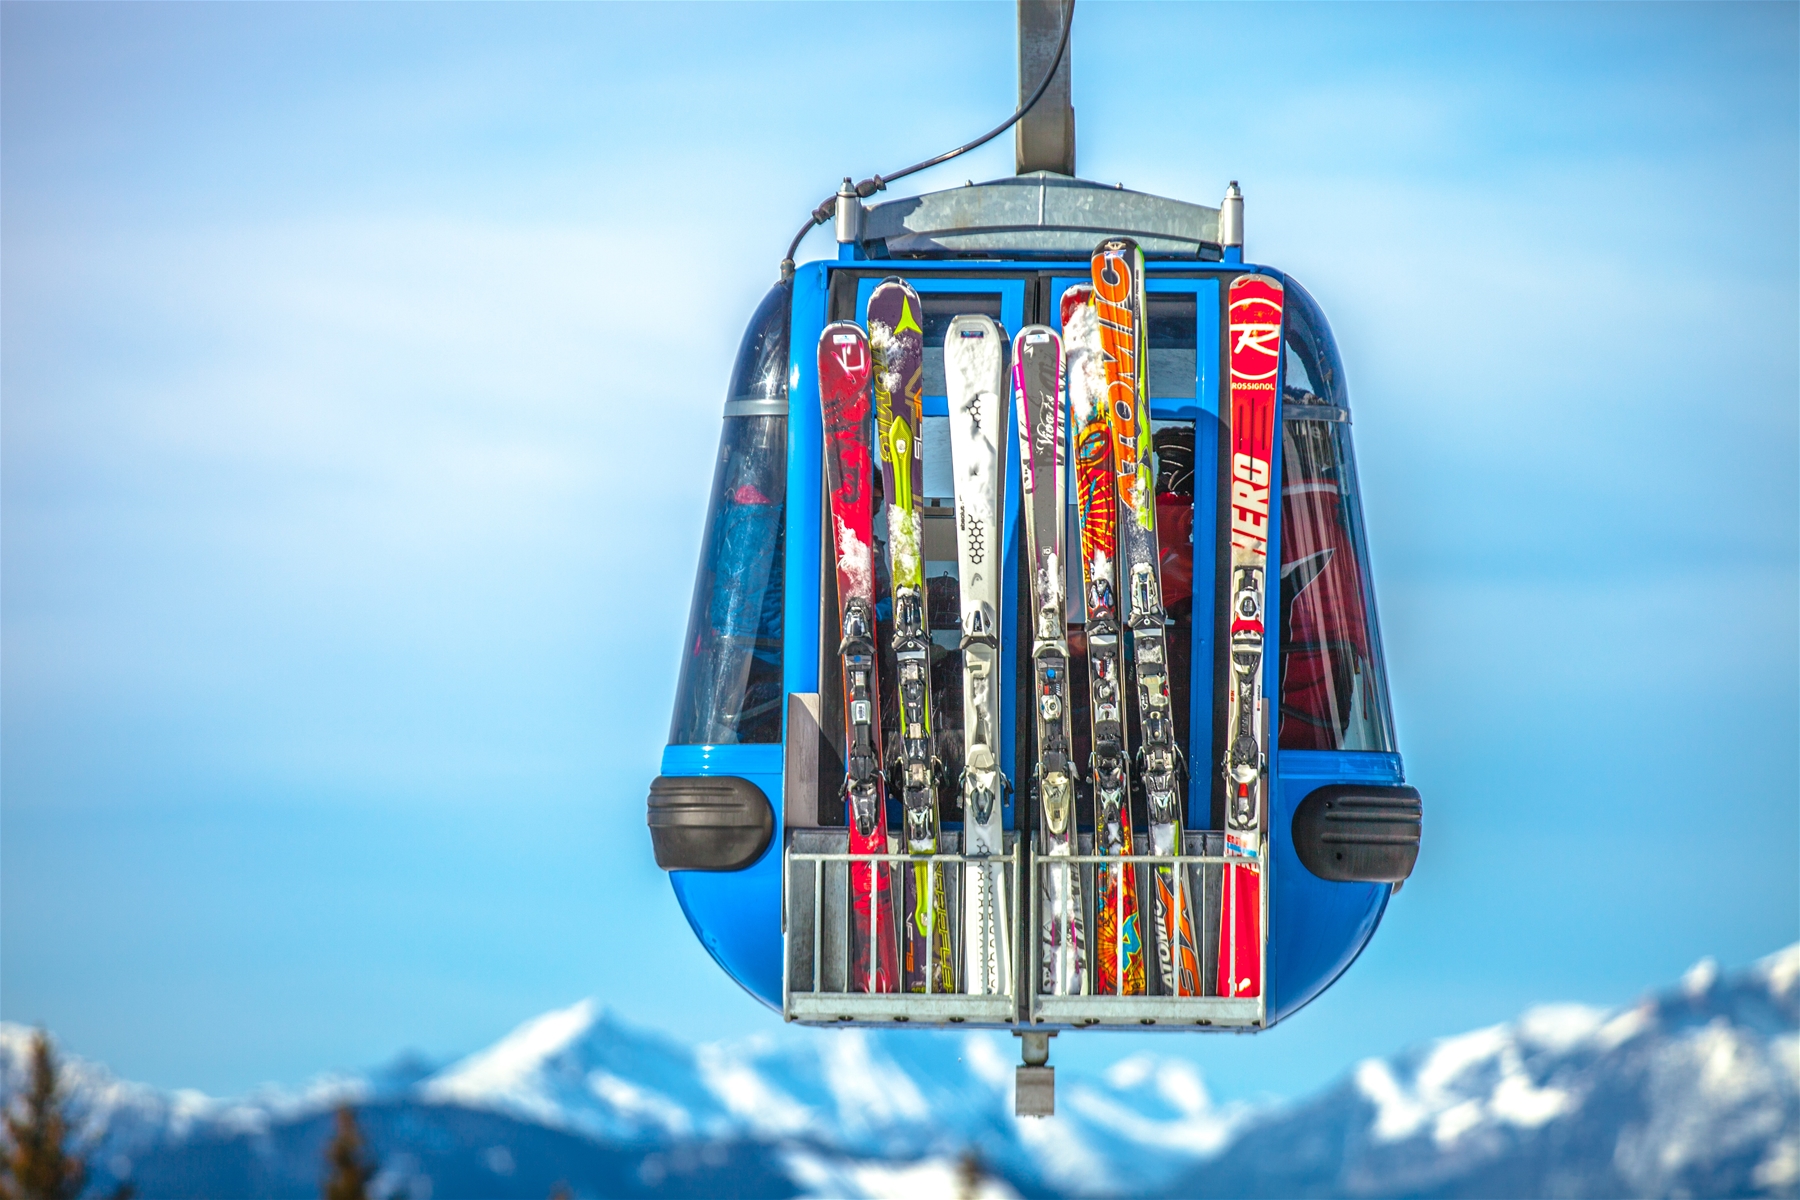 Ski Lift with Ski Stuck On The Side